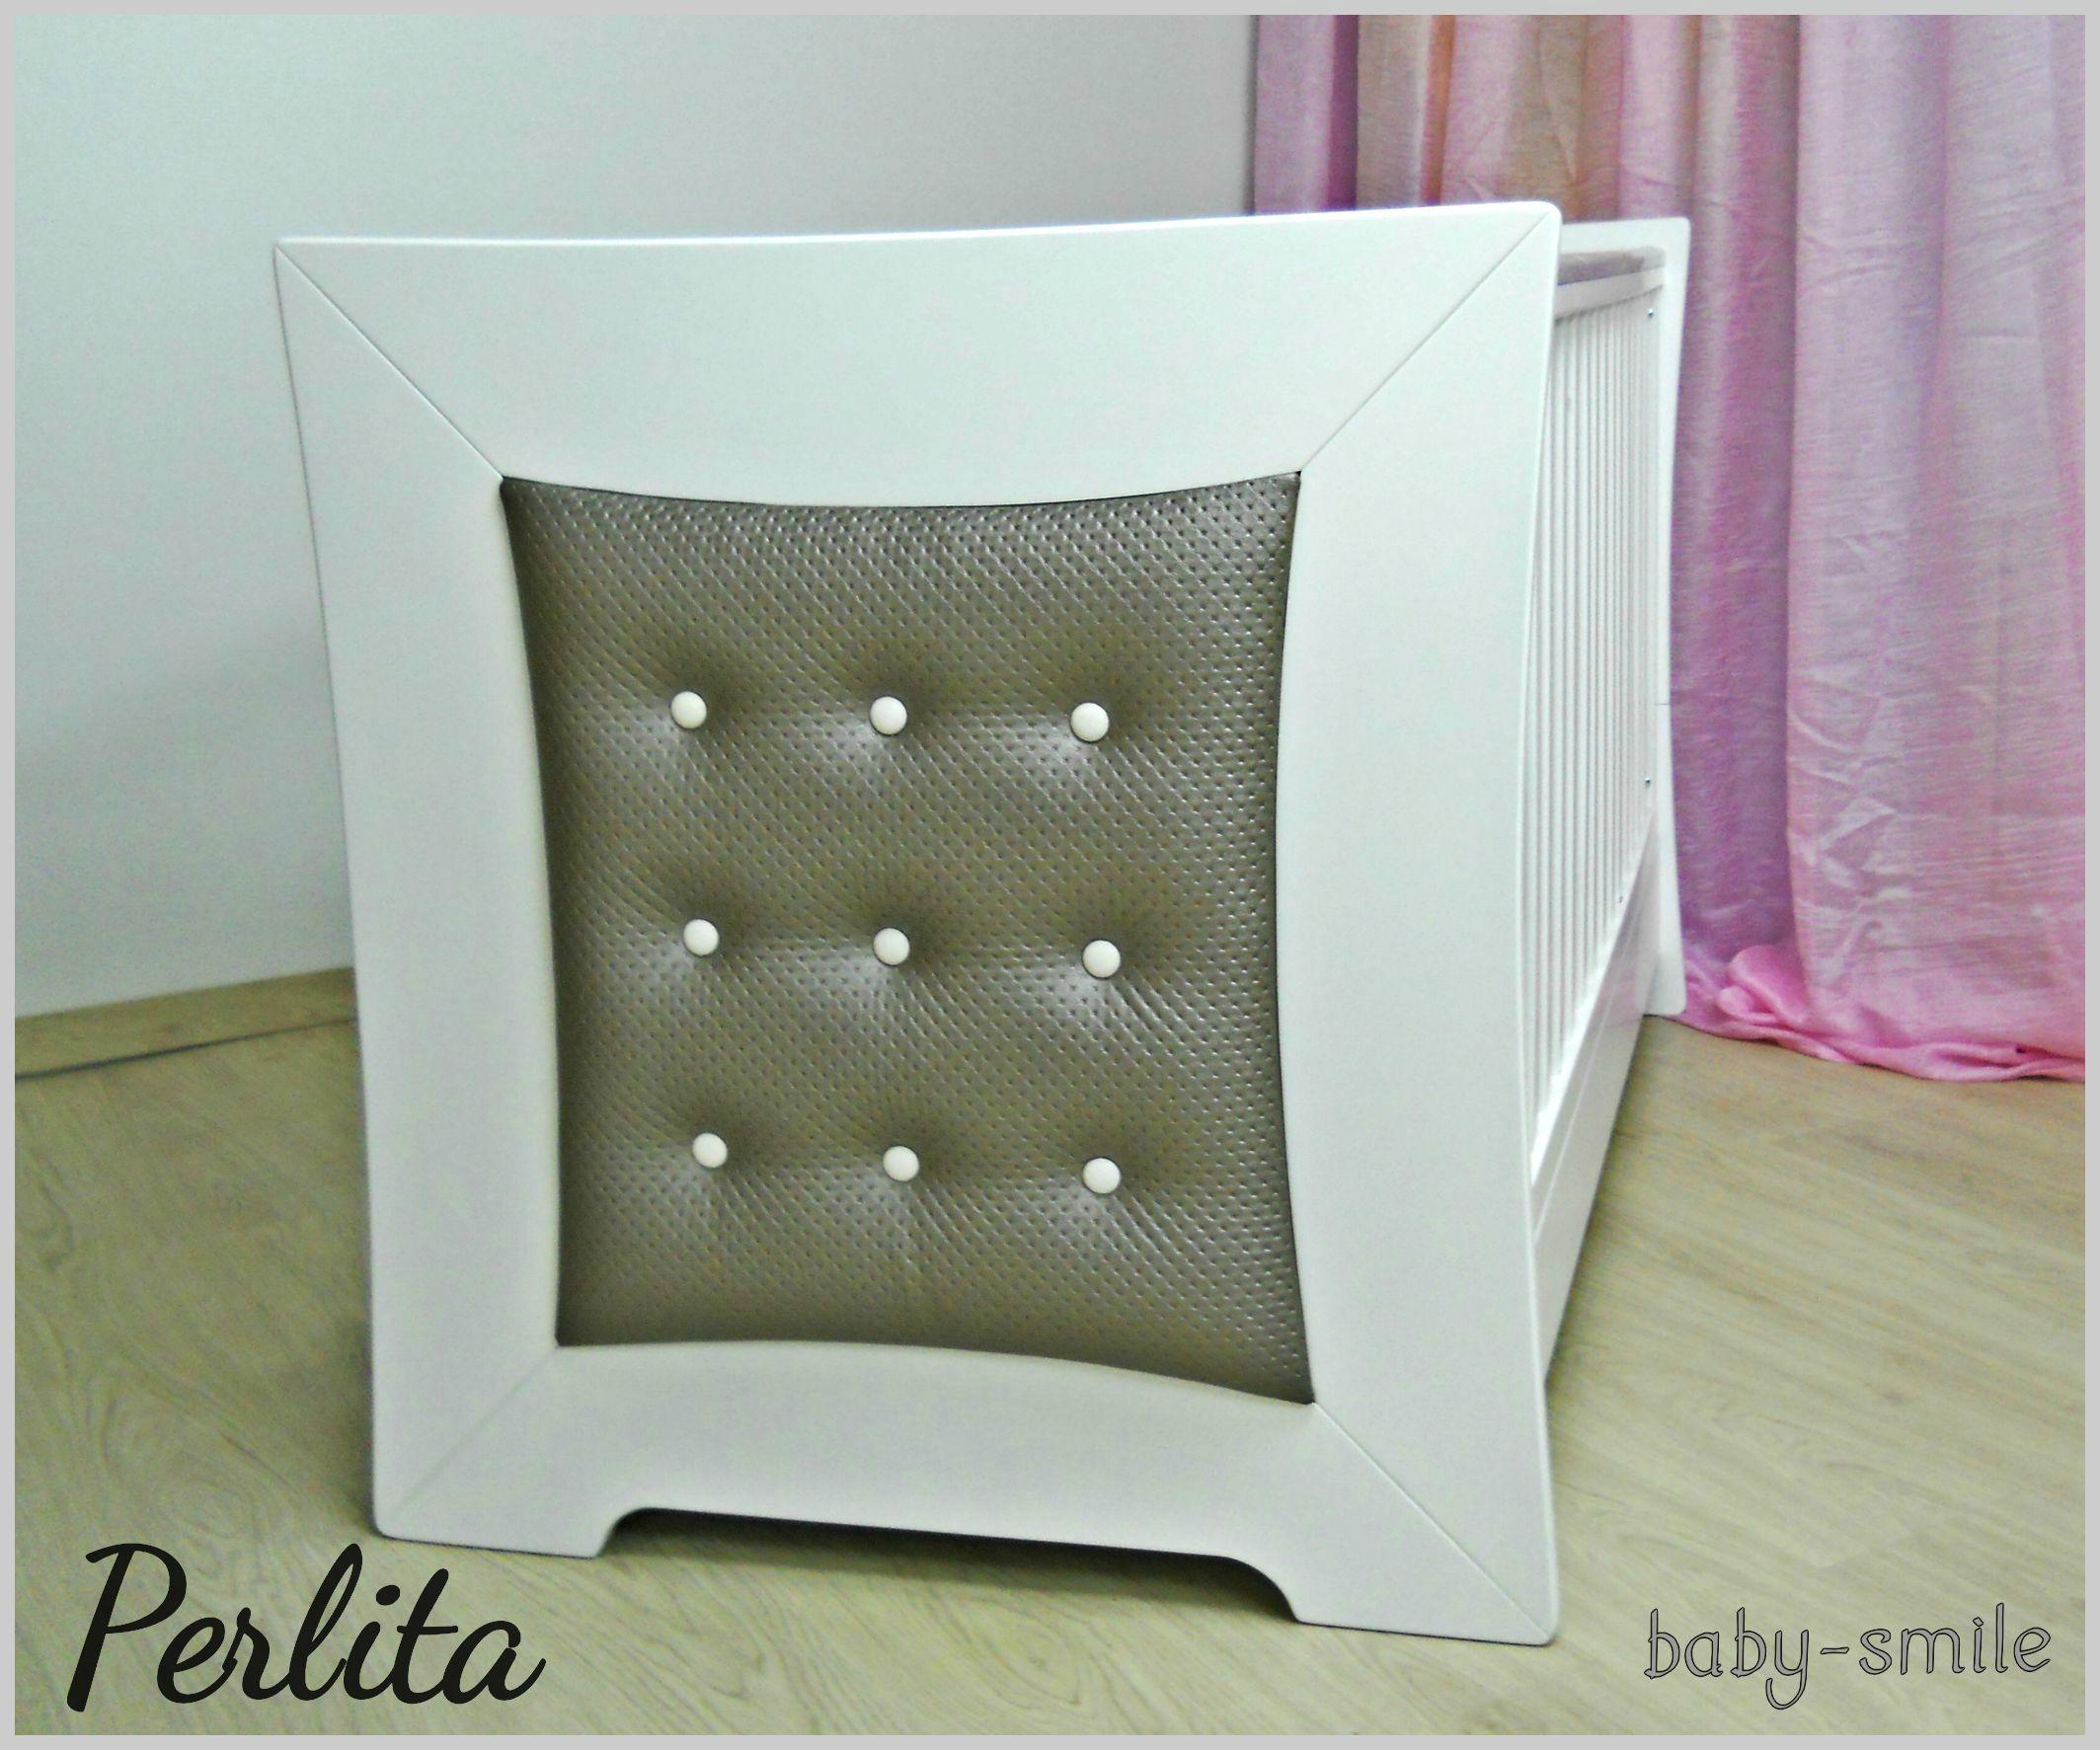 Προεφηβικό κρεβάτι Perlita Baby Smile